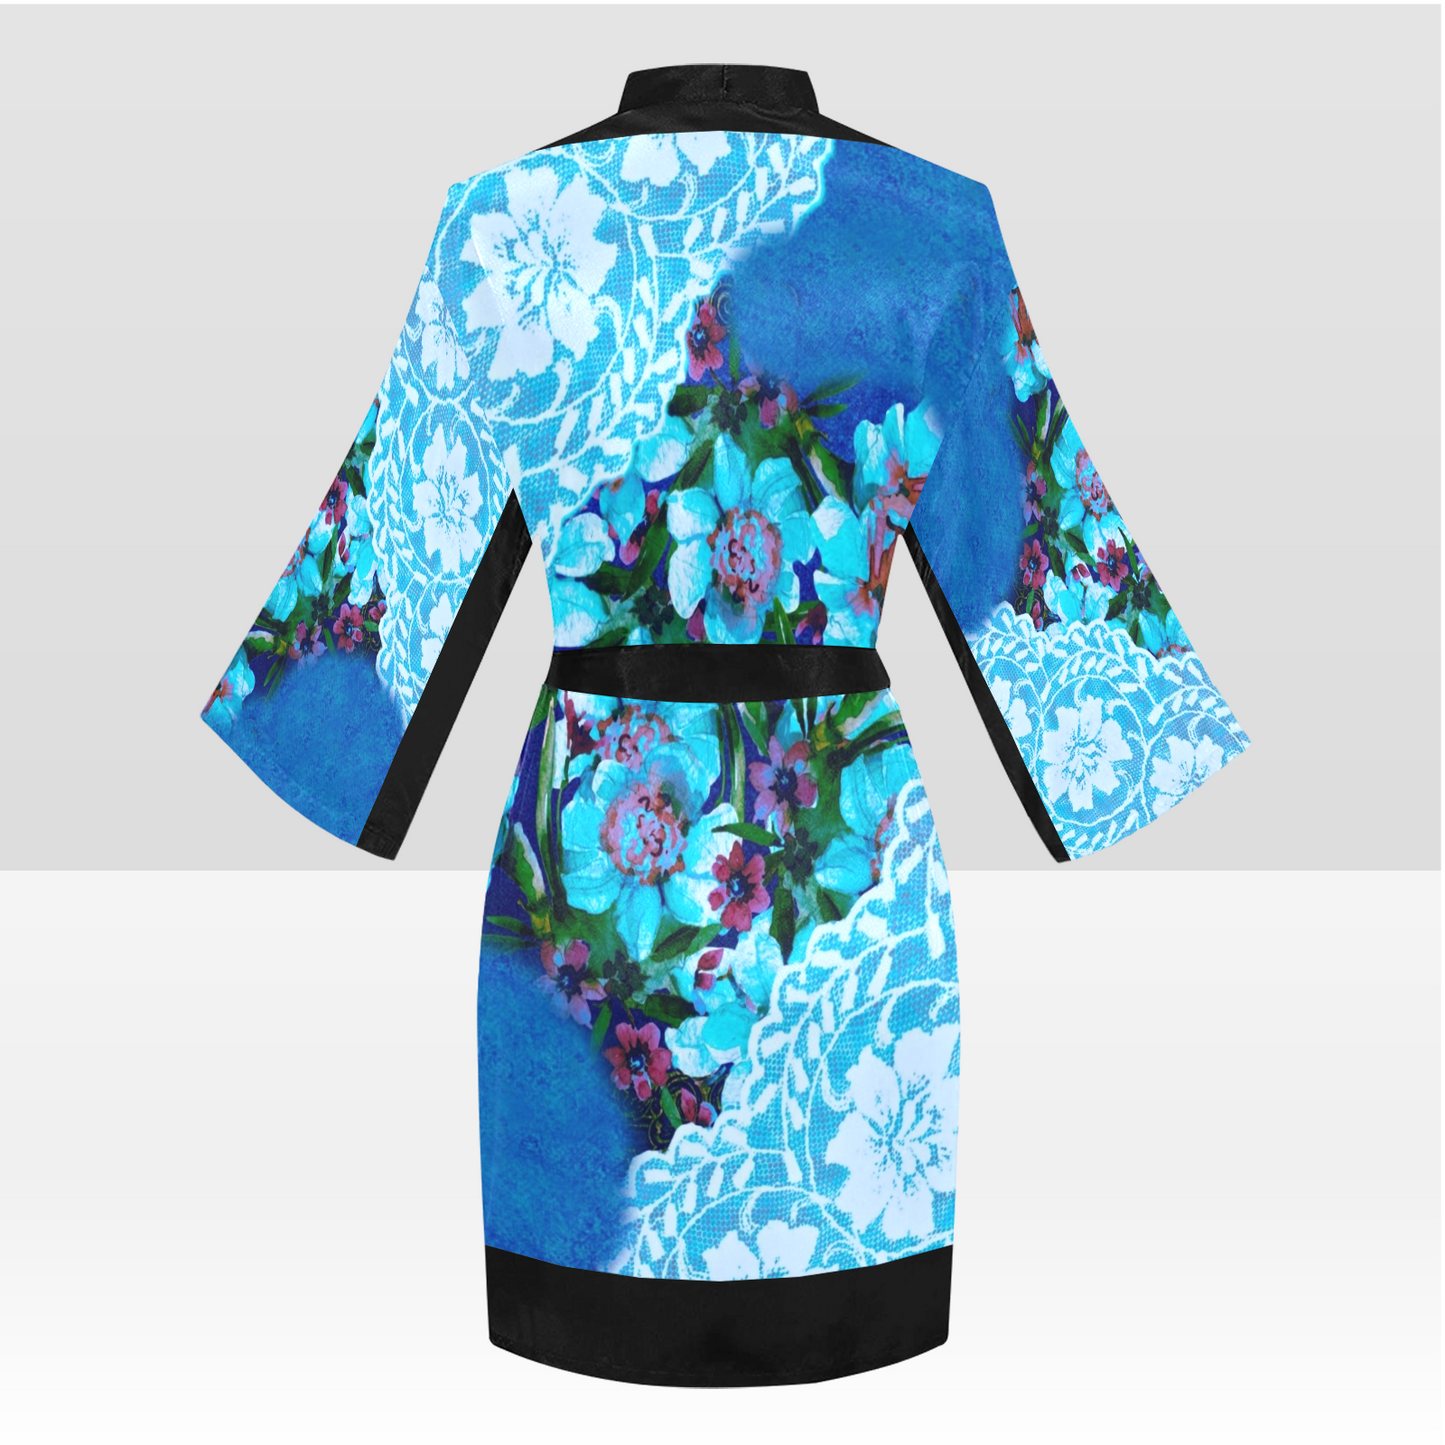 Victorian Lace Kimono Robe, Black or White Trim, Sizes XS to 2XL, Design 49